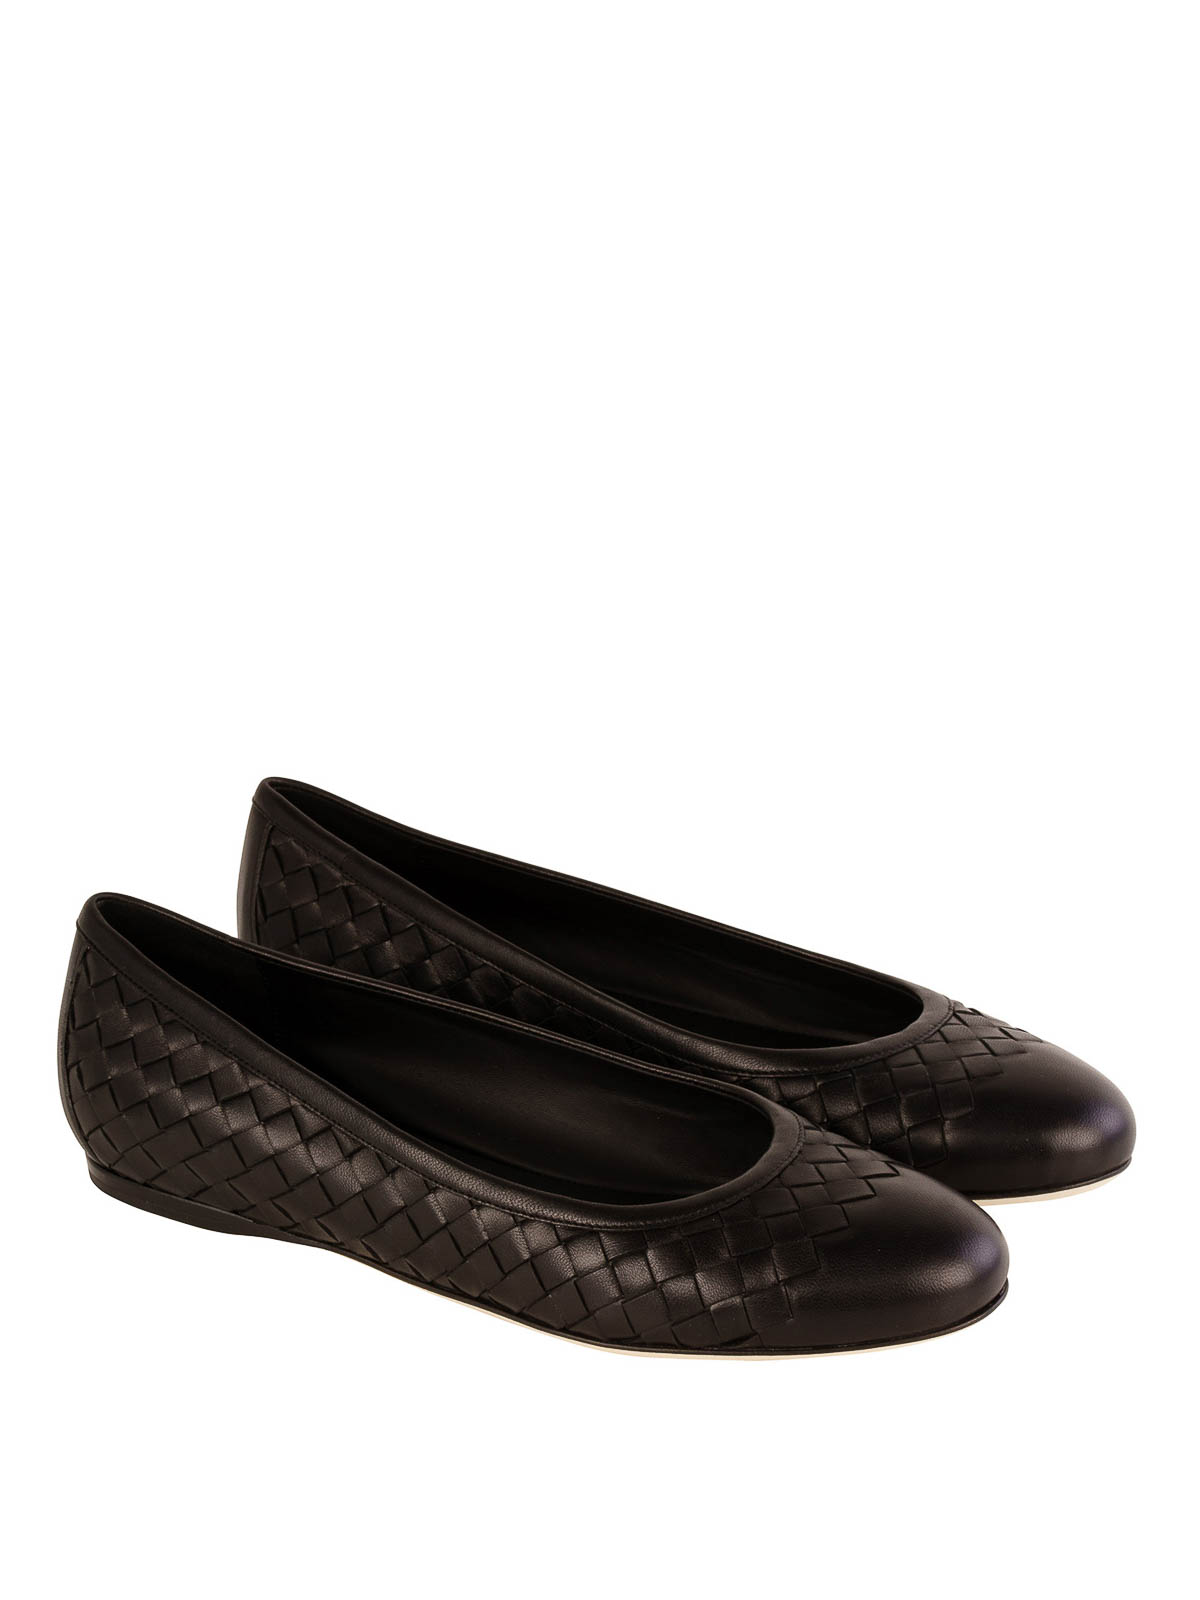 Bottega Veneta - Woven nappa flat shoes 